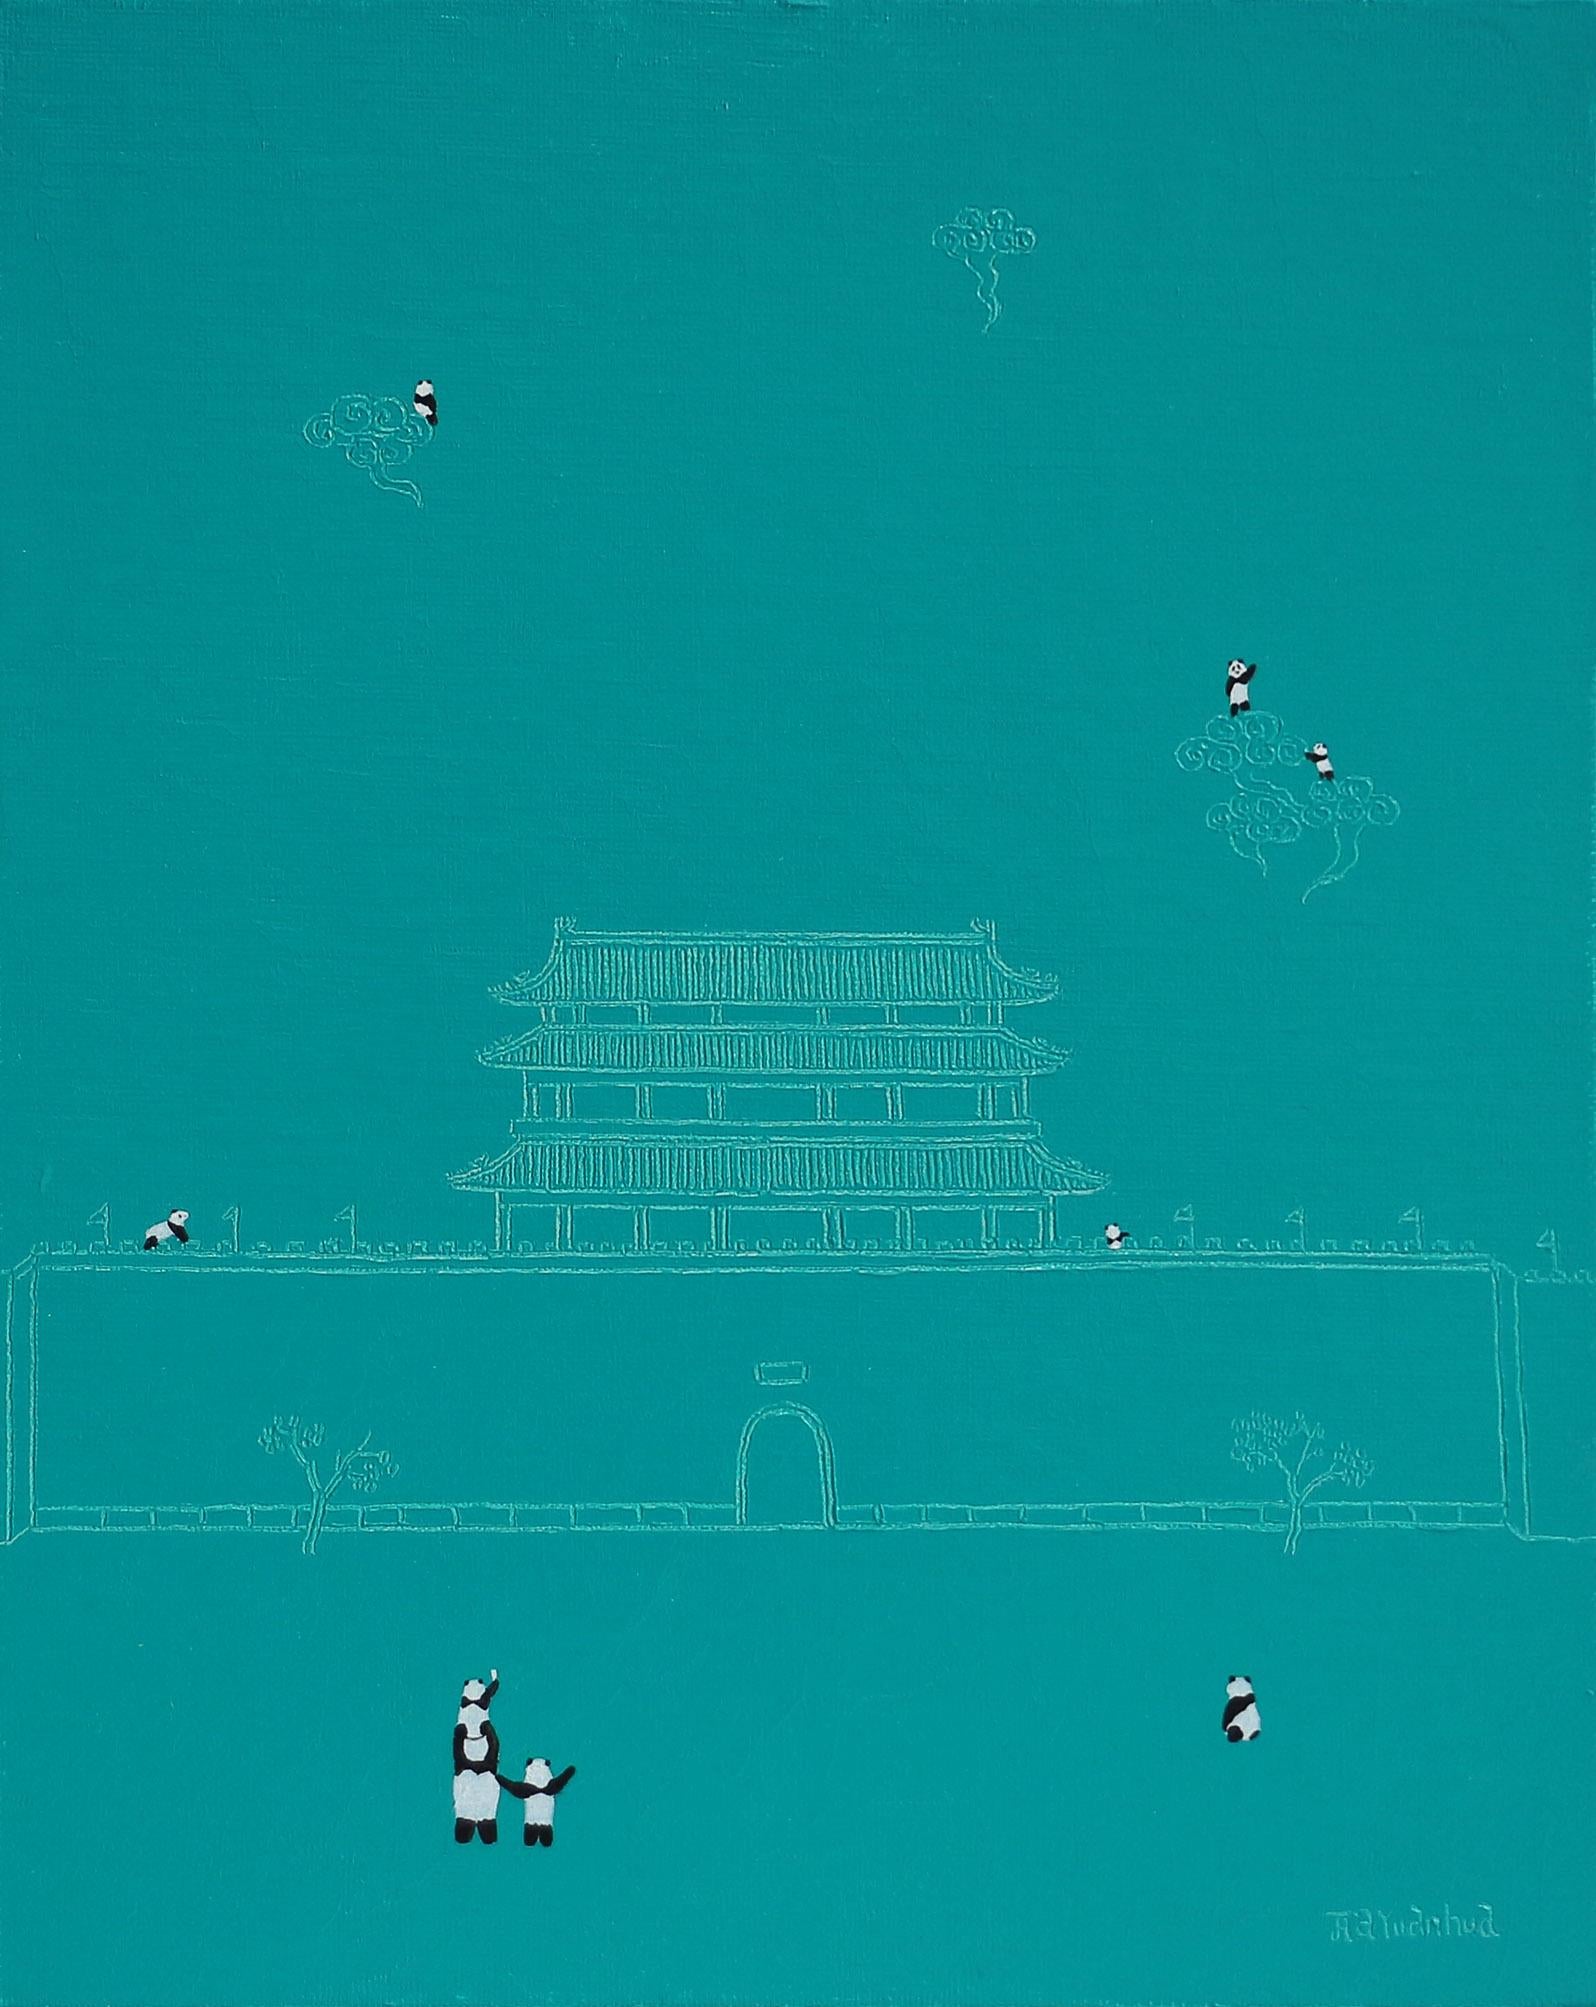 Art contemporain chinois par Jia Yuan-Hua - On the Cloud No.2